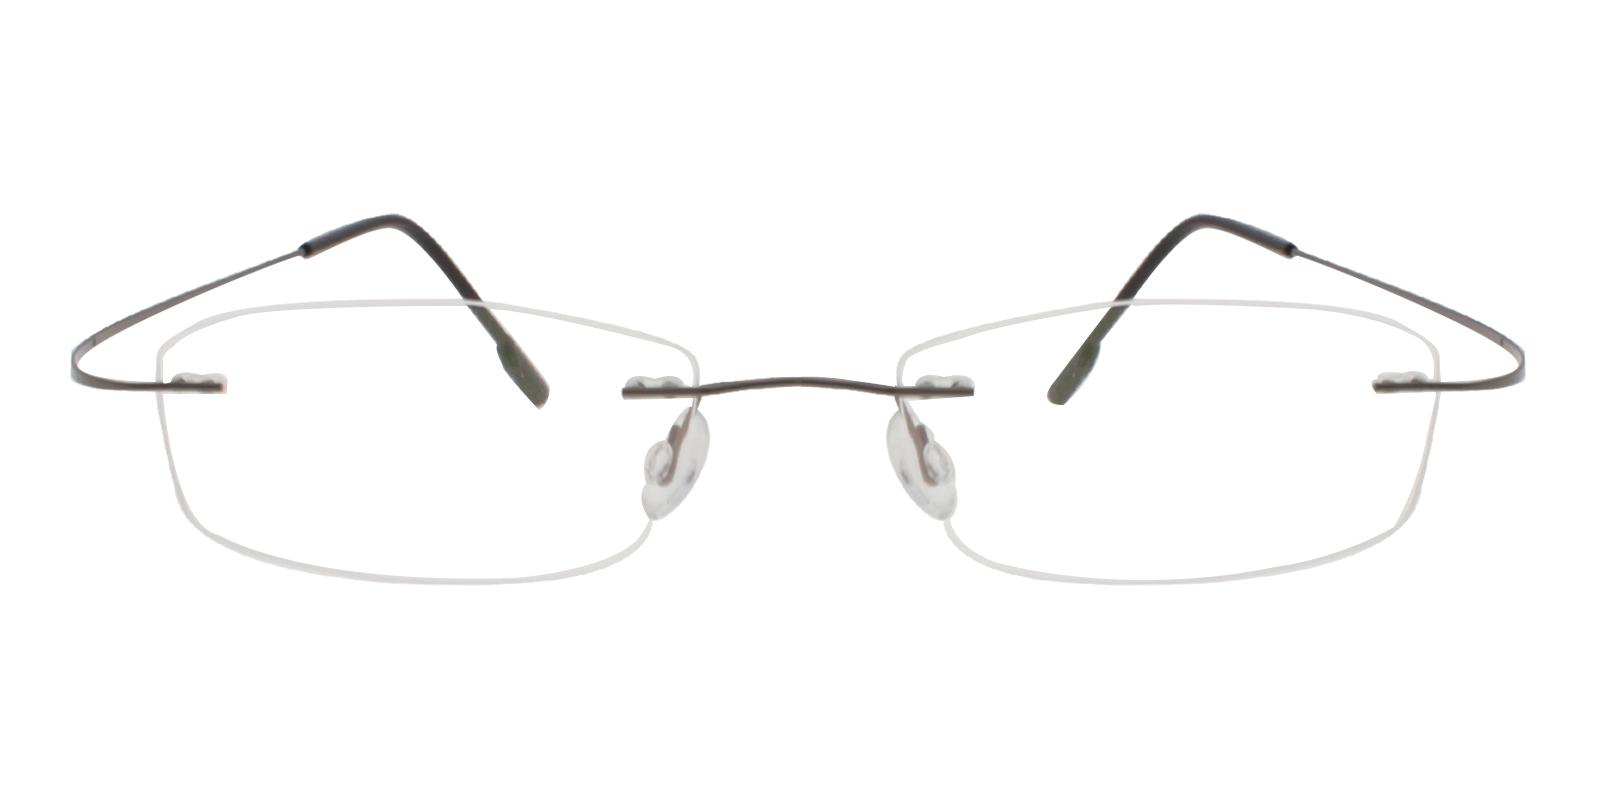 Olivia Gun Metal , Memory Eyeglasses , NosePads Frames from ABBE Glasses